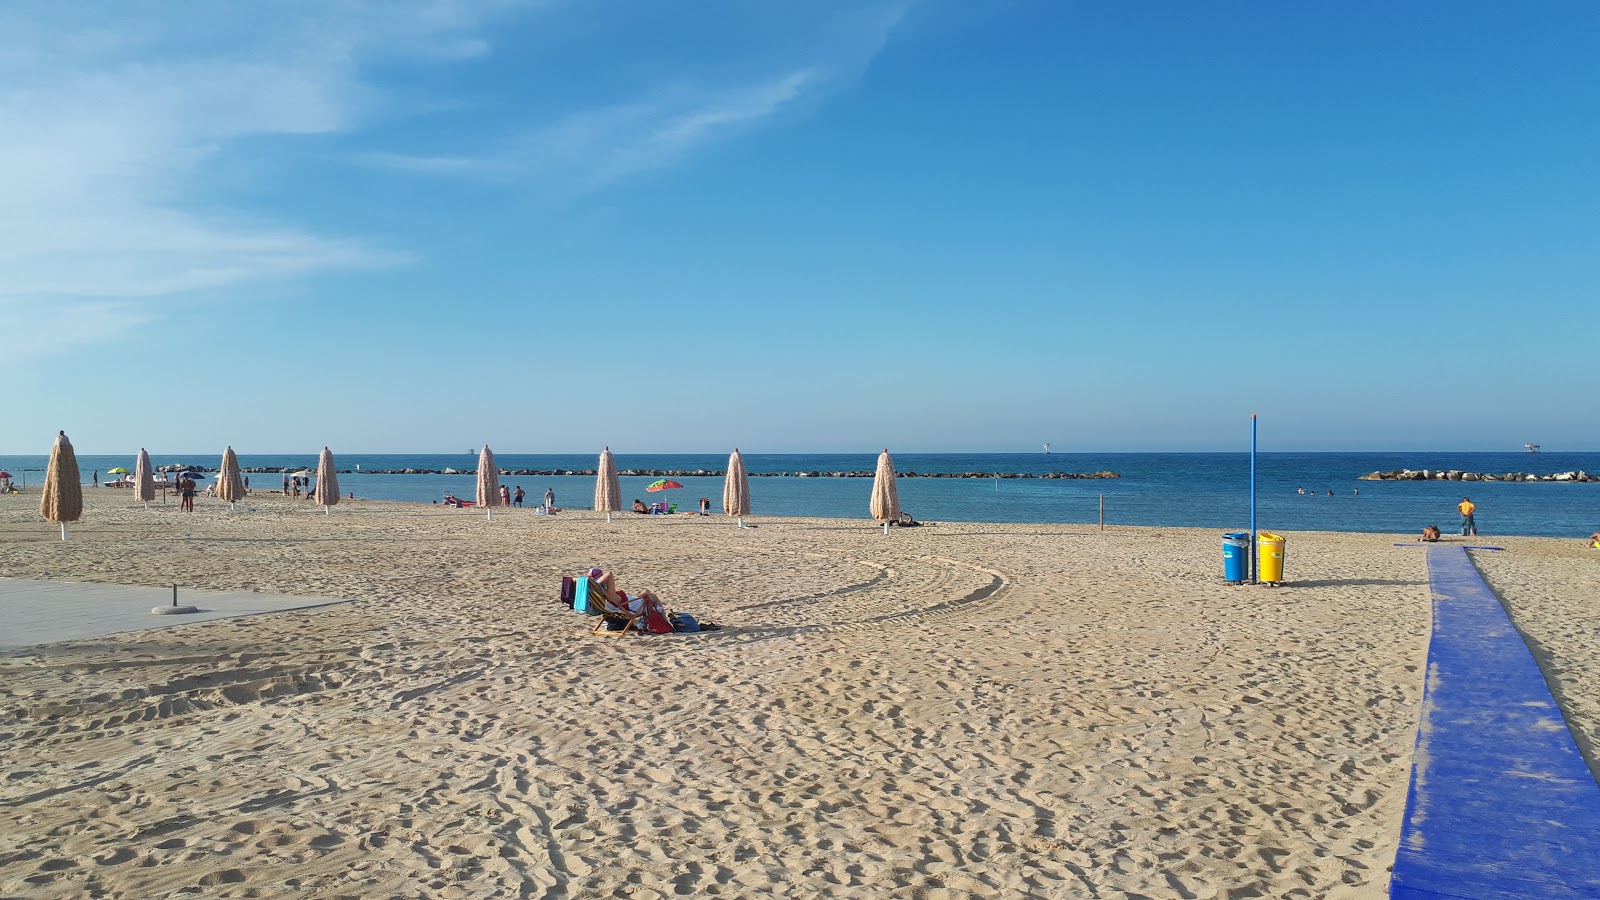 Photo of Spiaggia Le Morge beach resort area